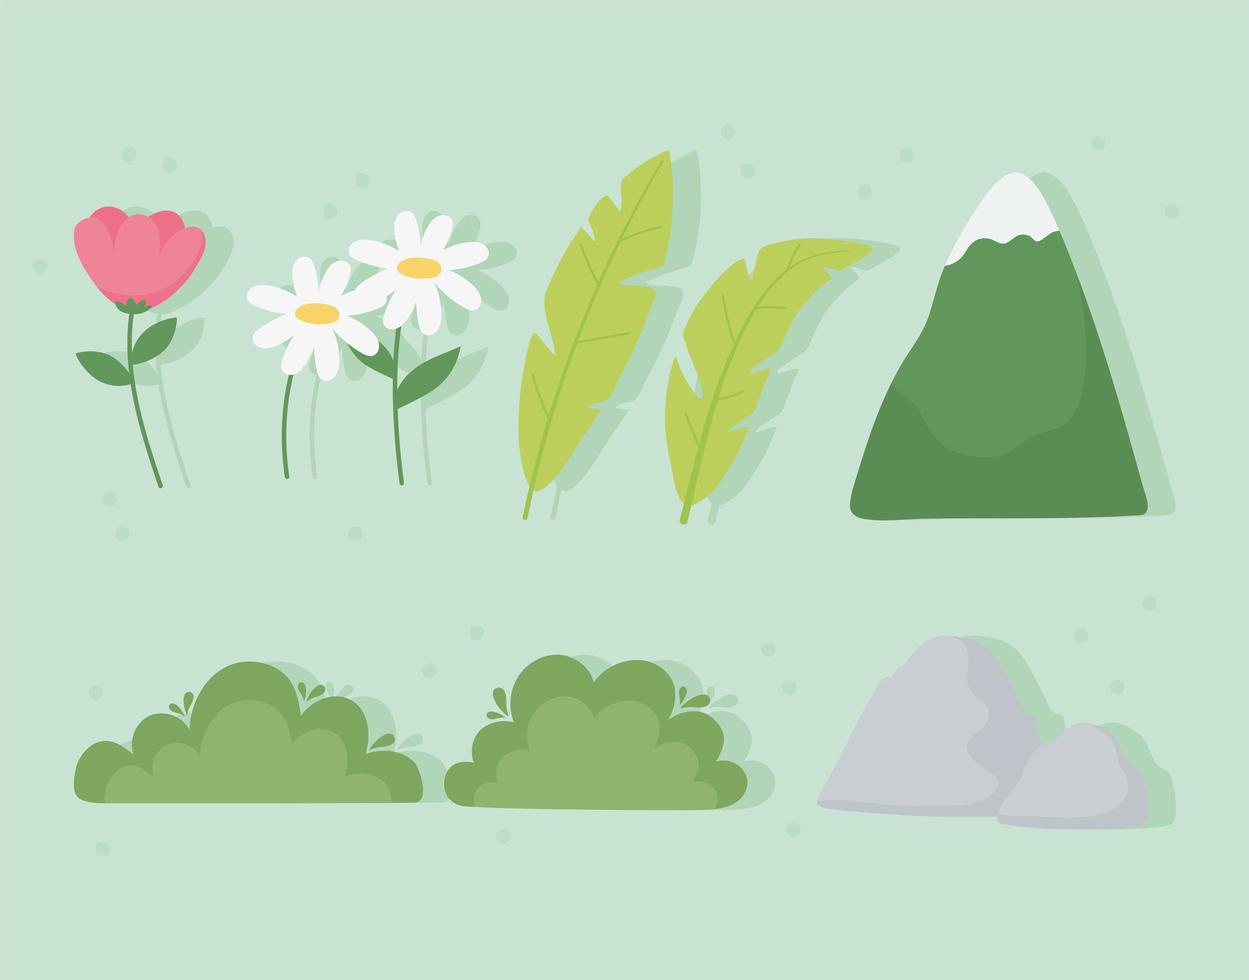 montagne, feuilles, fleurs, buisson, icônes de pierre vecteur